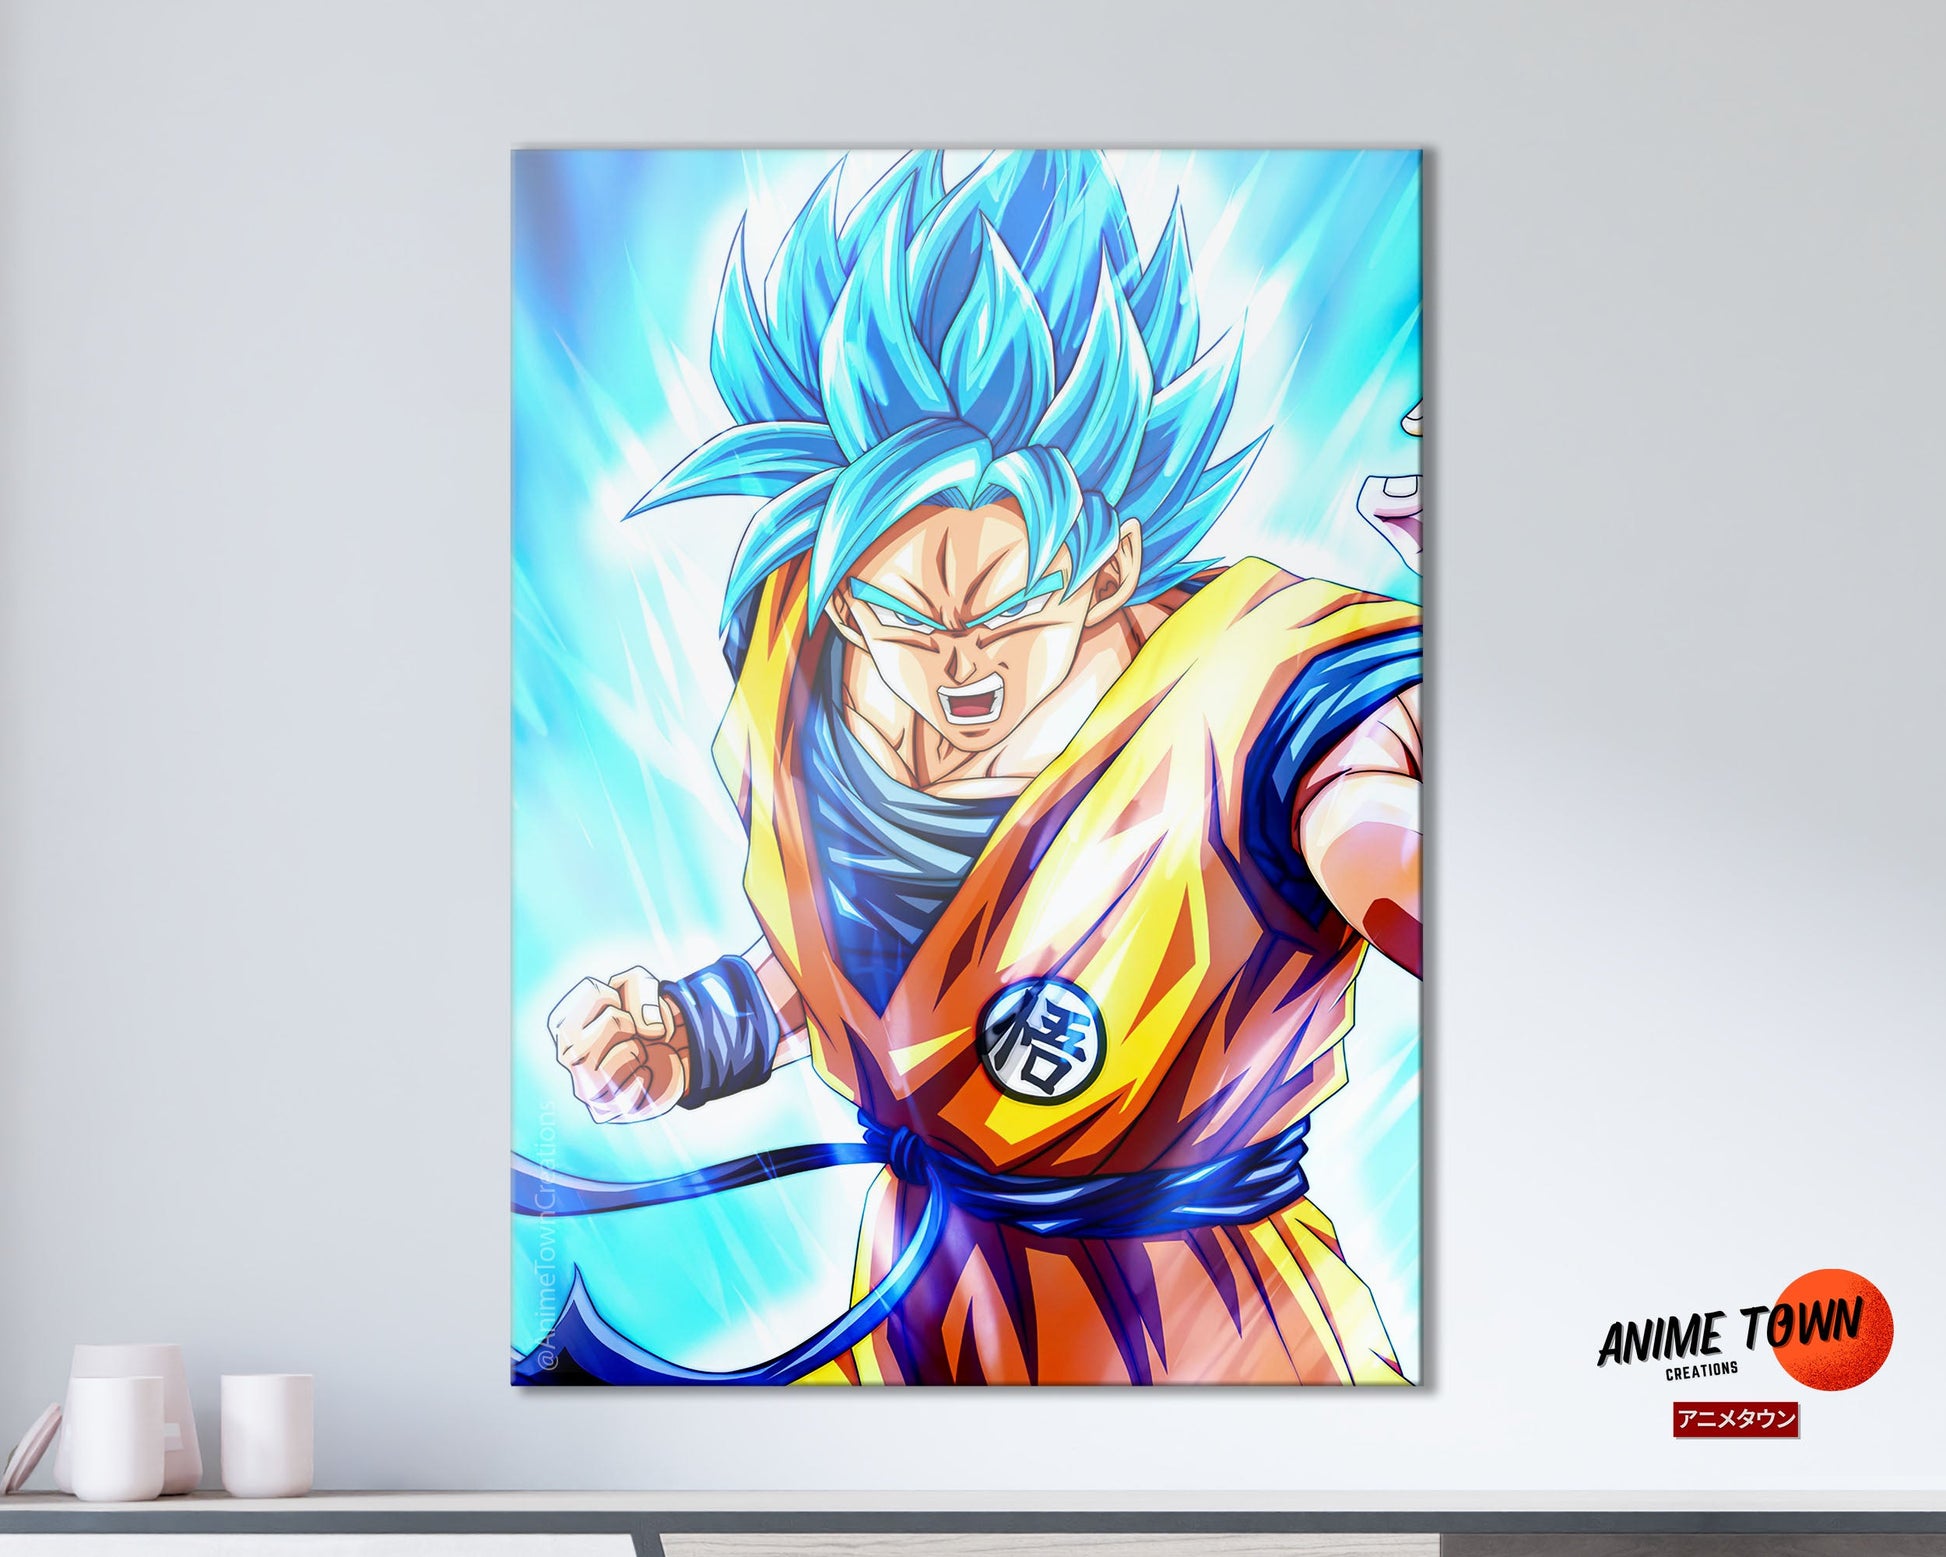 Anime Town Creations Metal Poster Dragon Ball Goku Super Saiyan Blue 11" x 17" Home Goods - Anime Dragon Ball Metal Poster